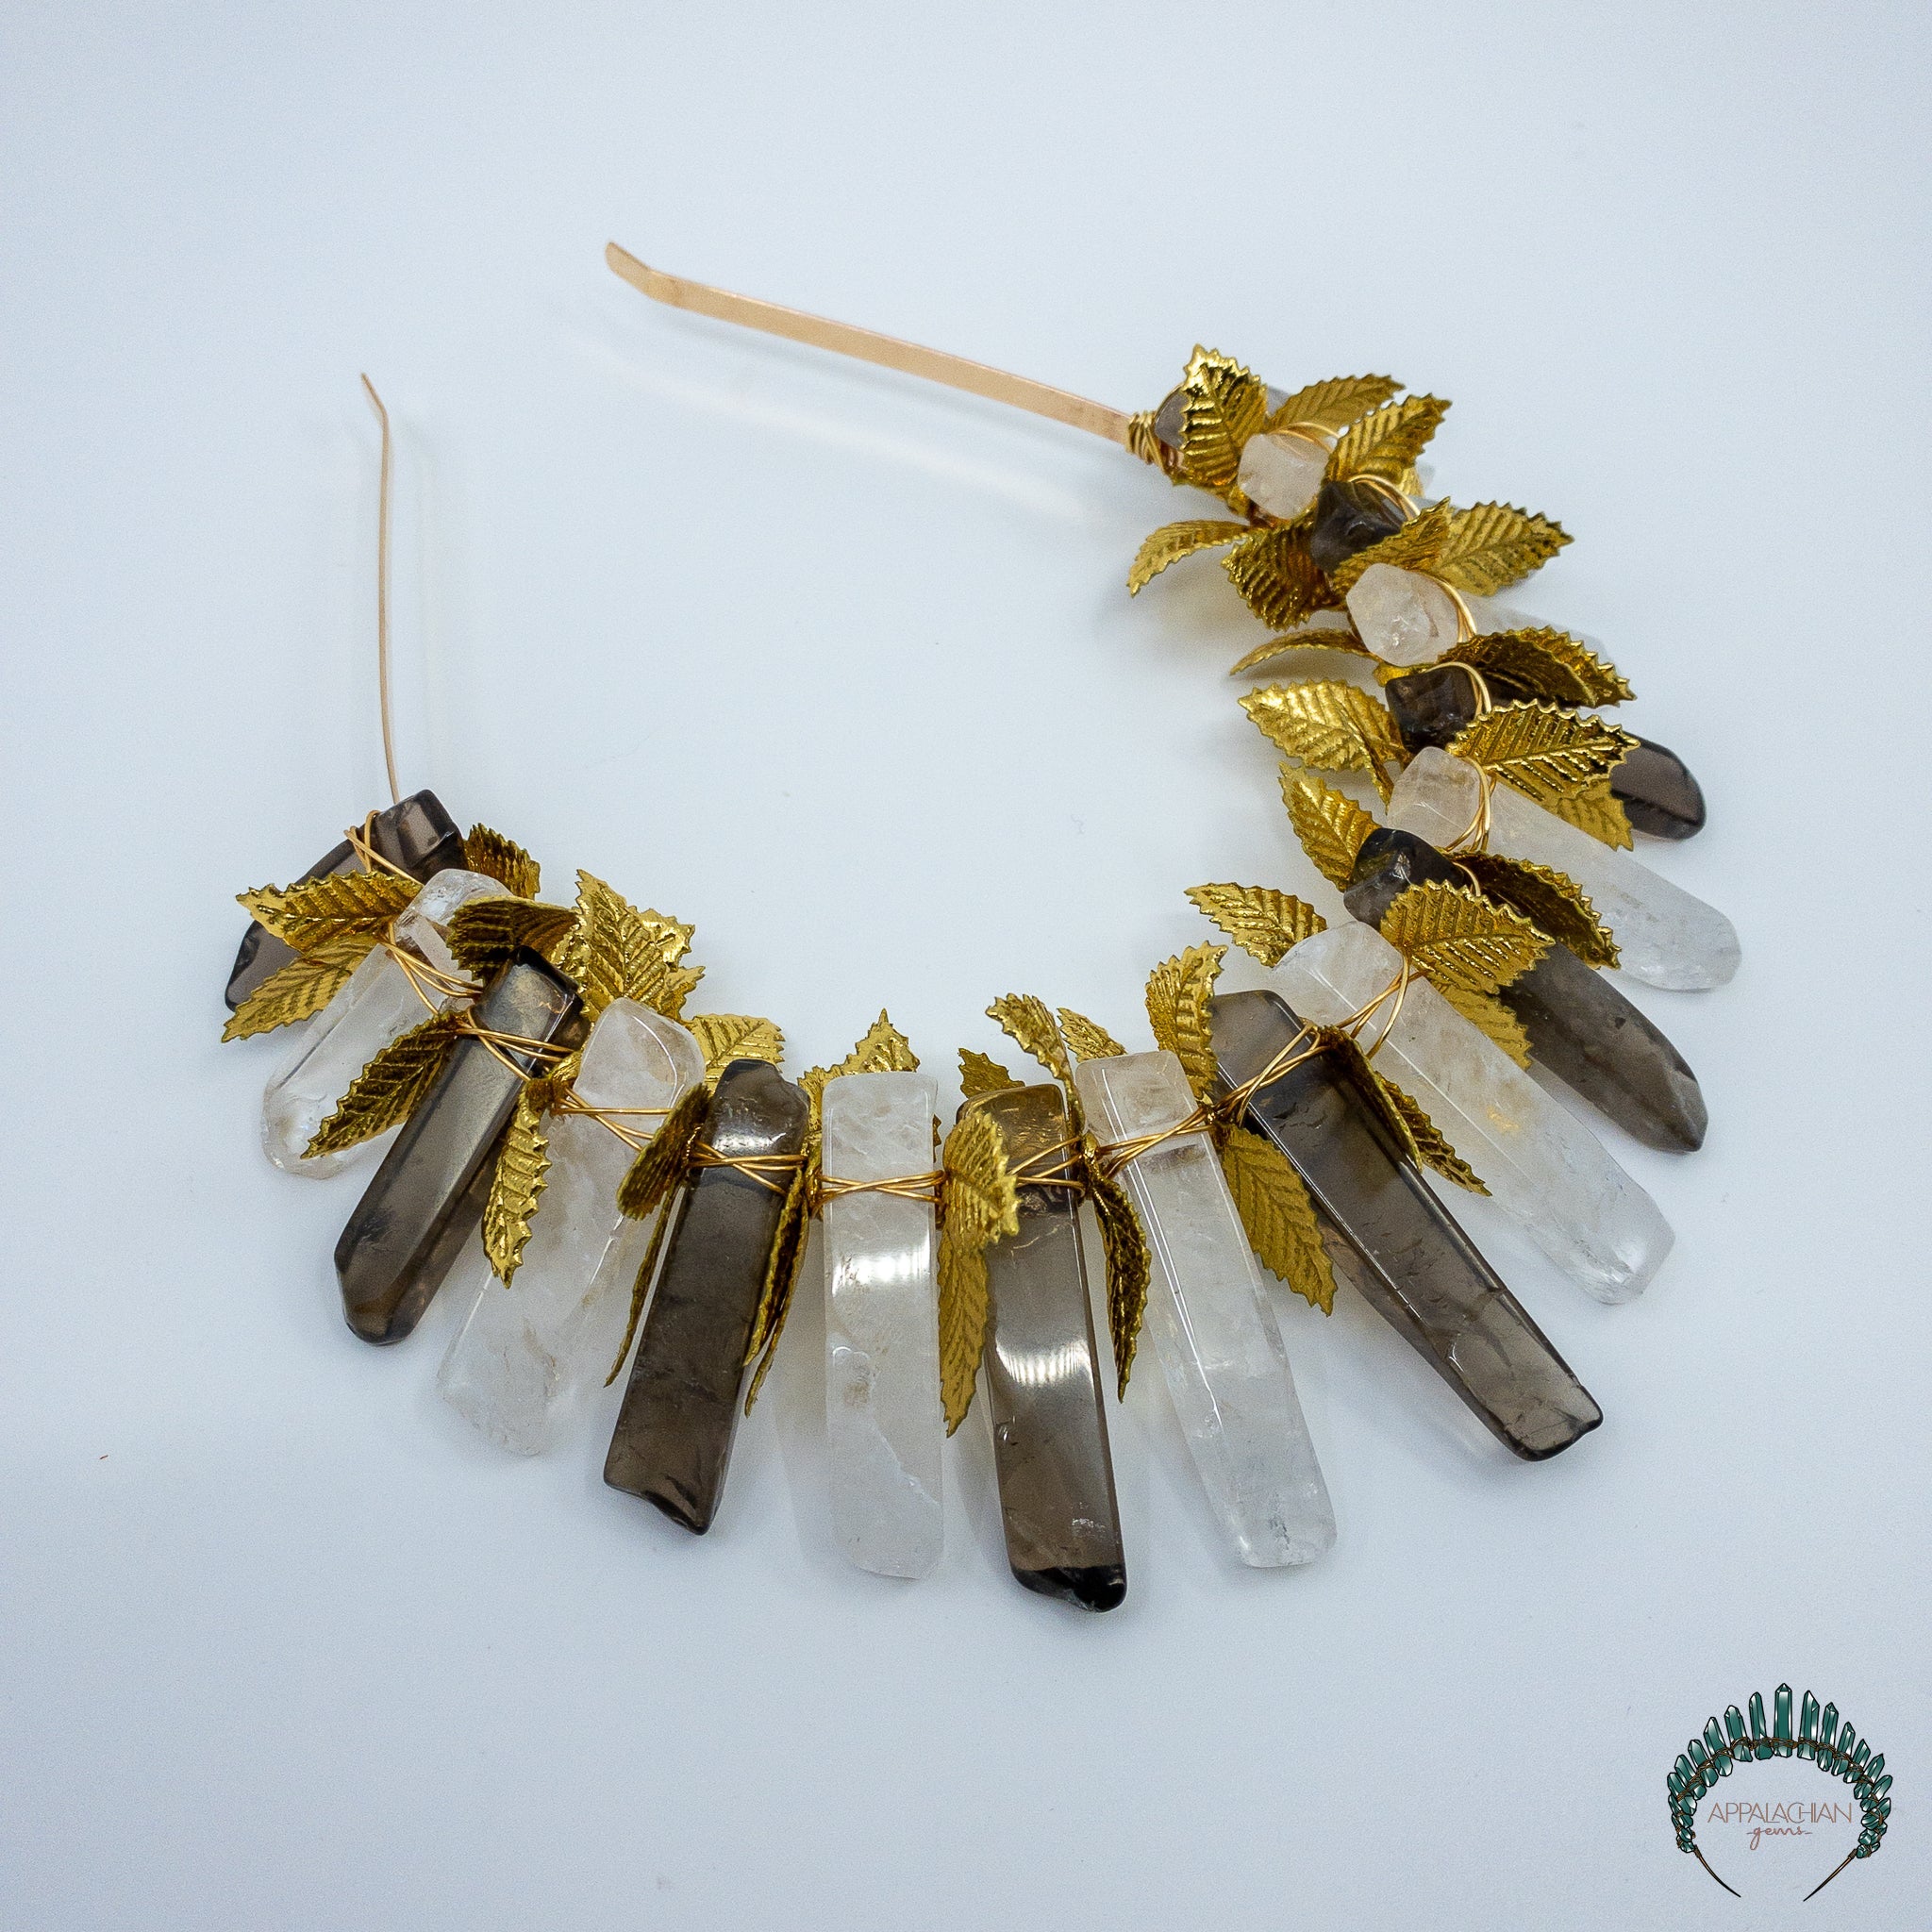 Manifestation Crystal Crown - Appalachian Gems